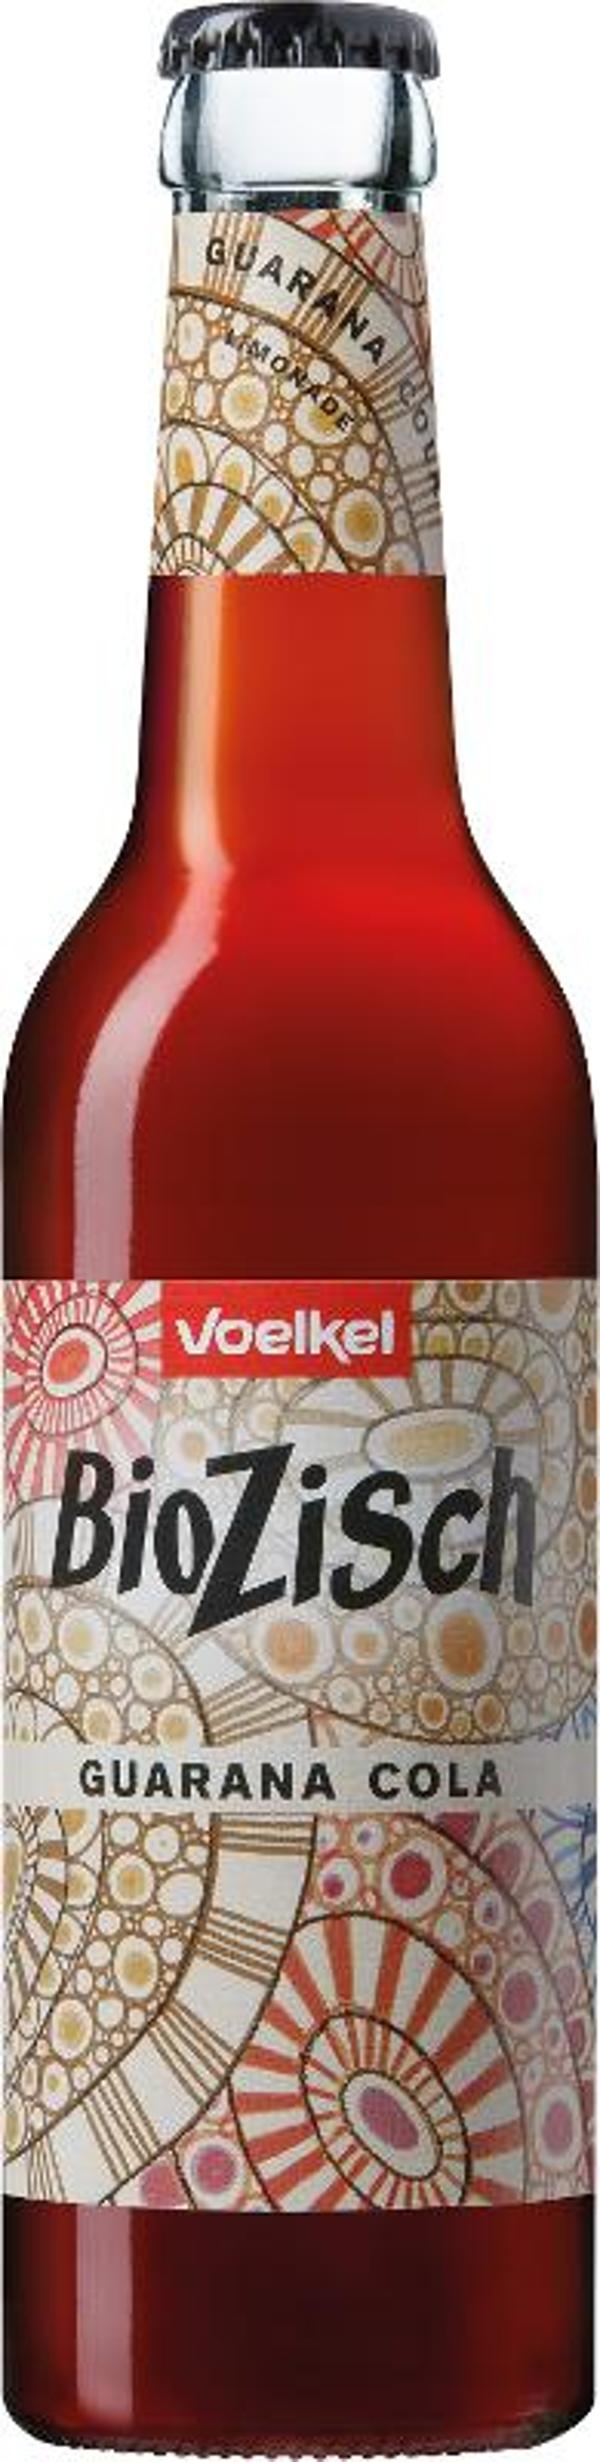 Produktfoto zu Bio Zisch - Guarana Cola